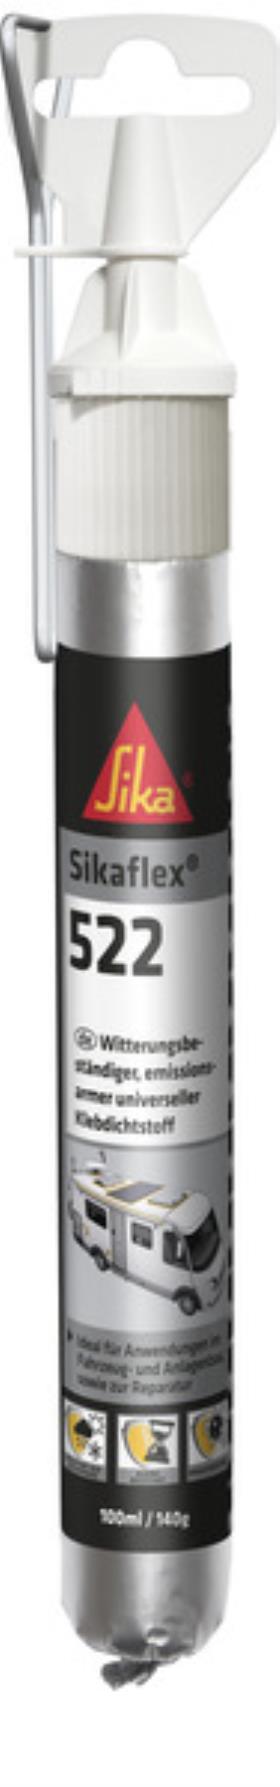 Sikaflex 522 weiß